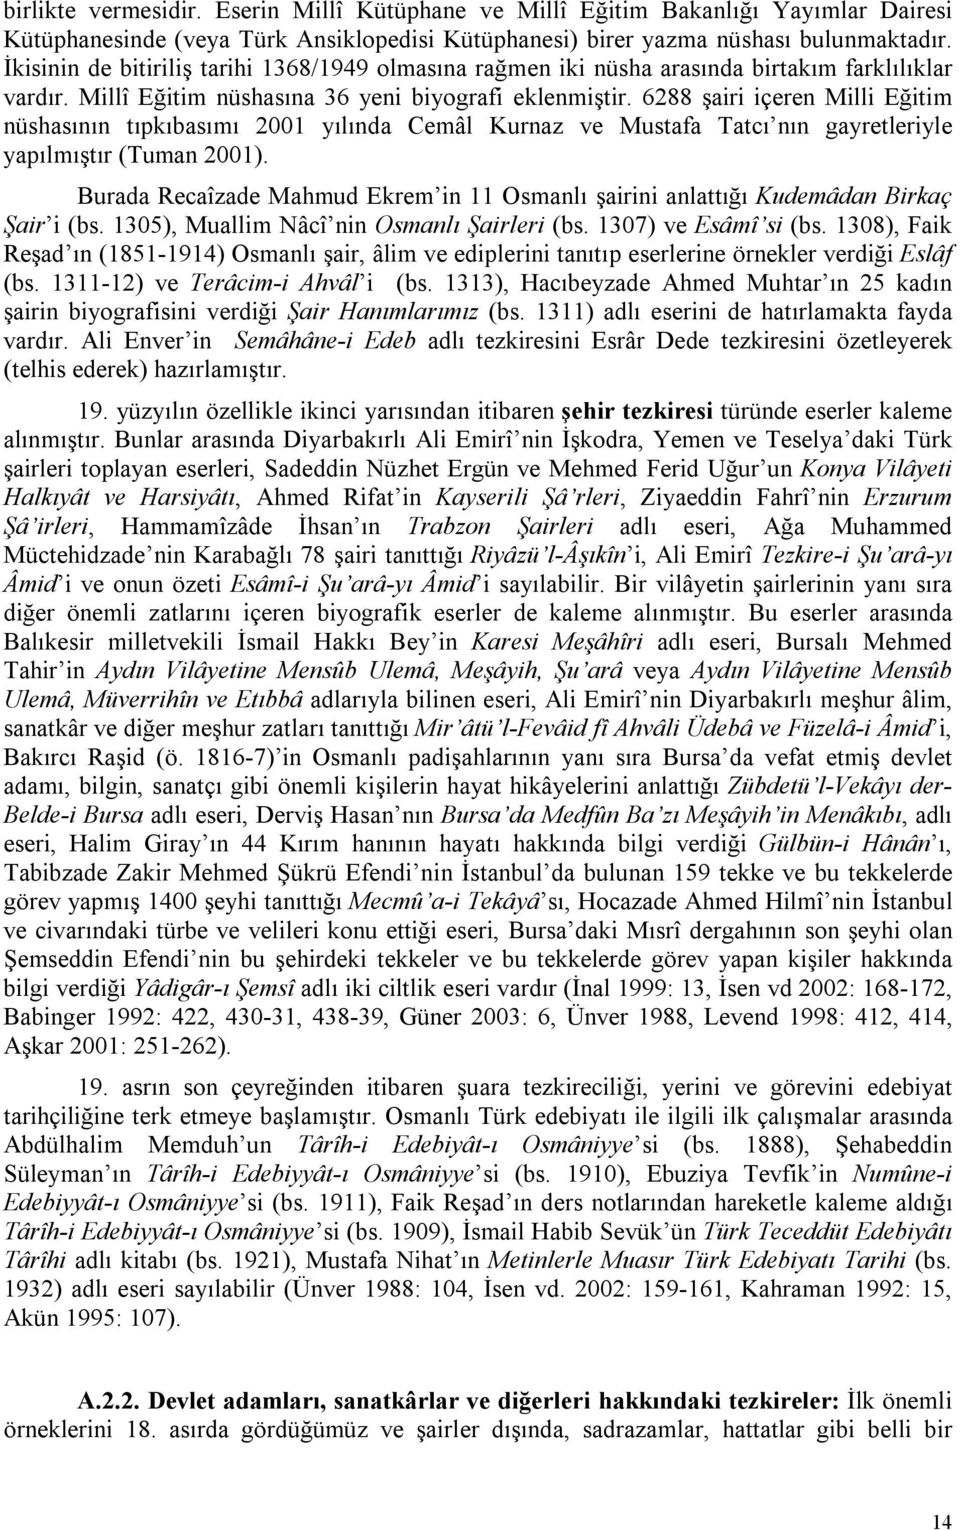 6288 şairi içeren Milli Eğitim nüshasının tıpkıbasımı 2001 yılında Cemâl Kurnaz ve Mustafa Tatcı nın gayretleriyle yapılmıştır (Tuman 2001).